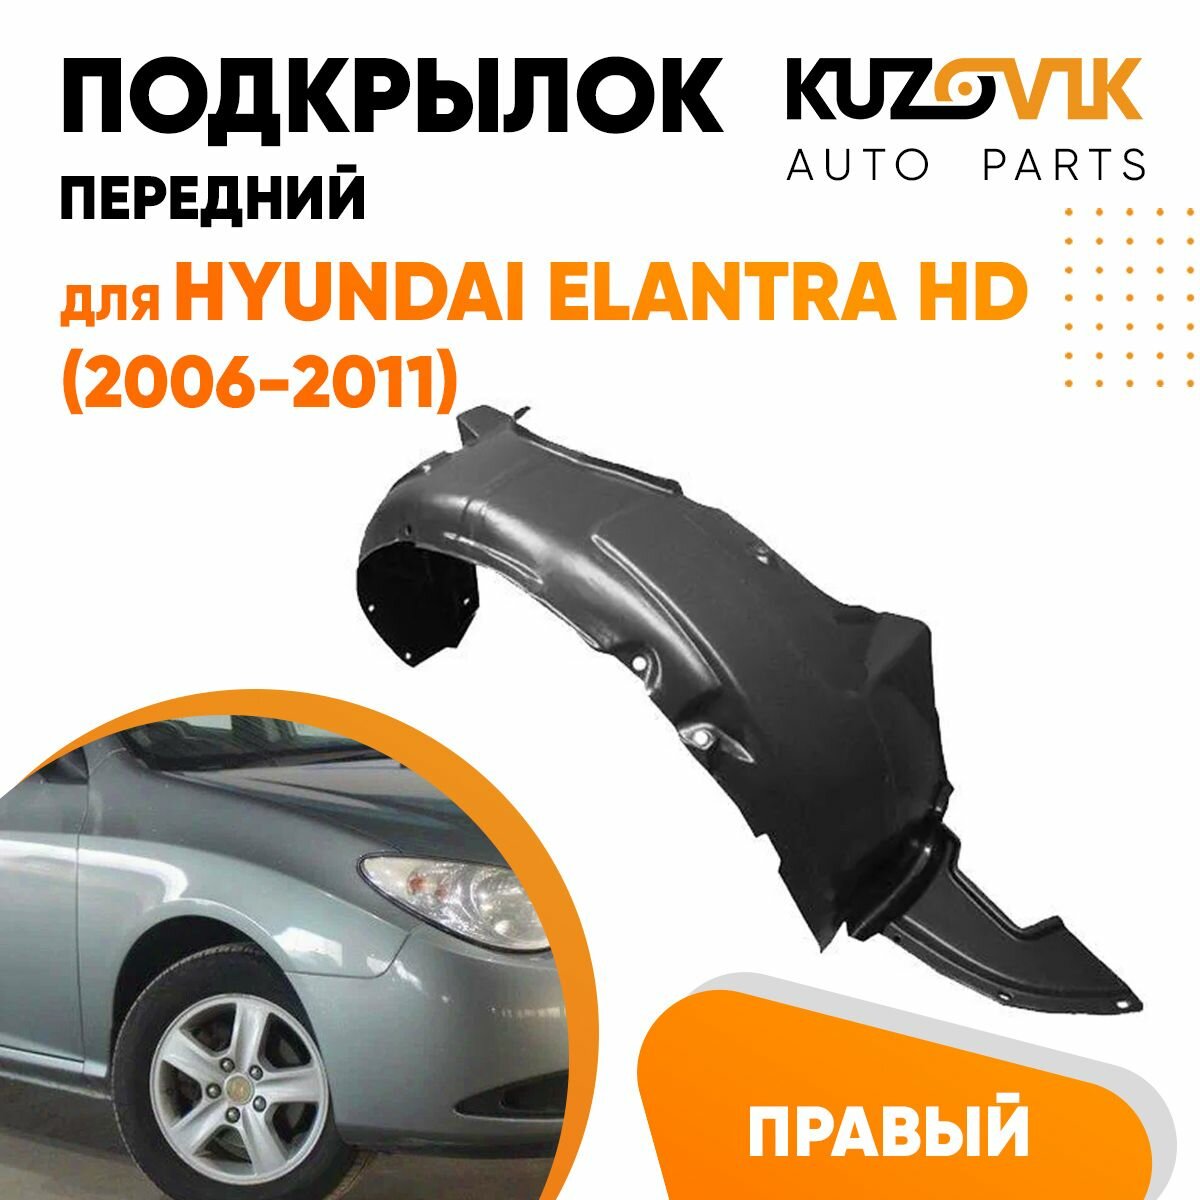 Подкрылок передний для Хендай Элантра Hyundai Elantra HD (2006-2011) правый